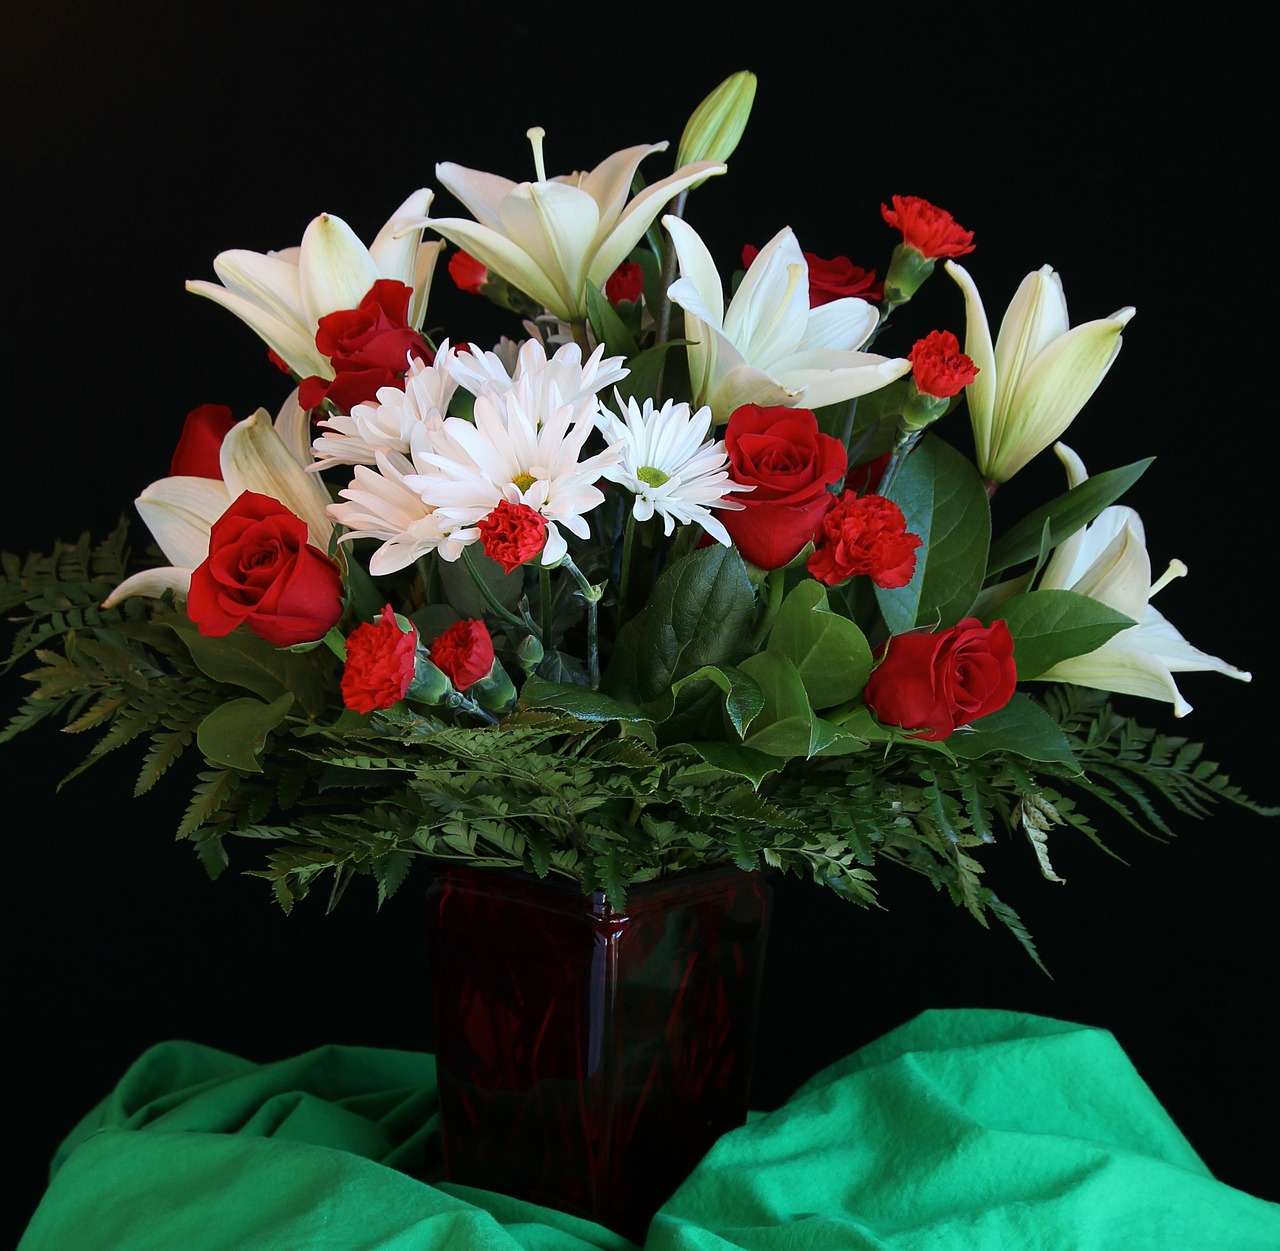 flower vase bouquet arrangement free photo